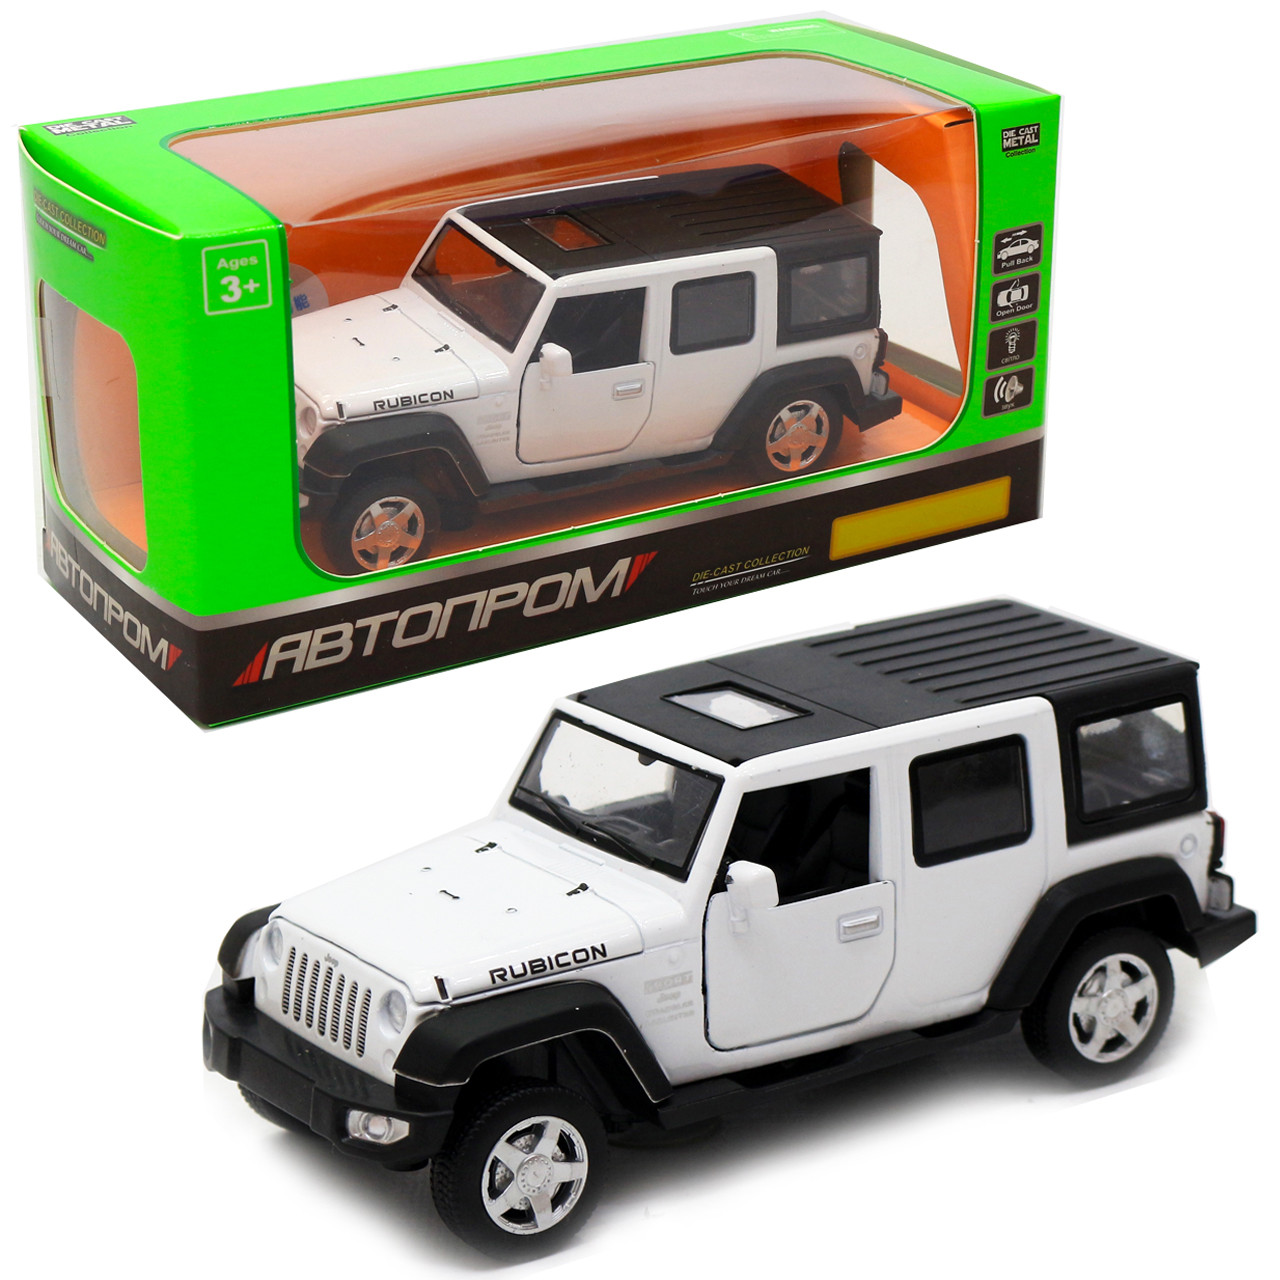 Іграшкова машинка металева джип «Jeep», Автопром, білий, 6х15х6 см, від 3 років, (6616)